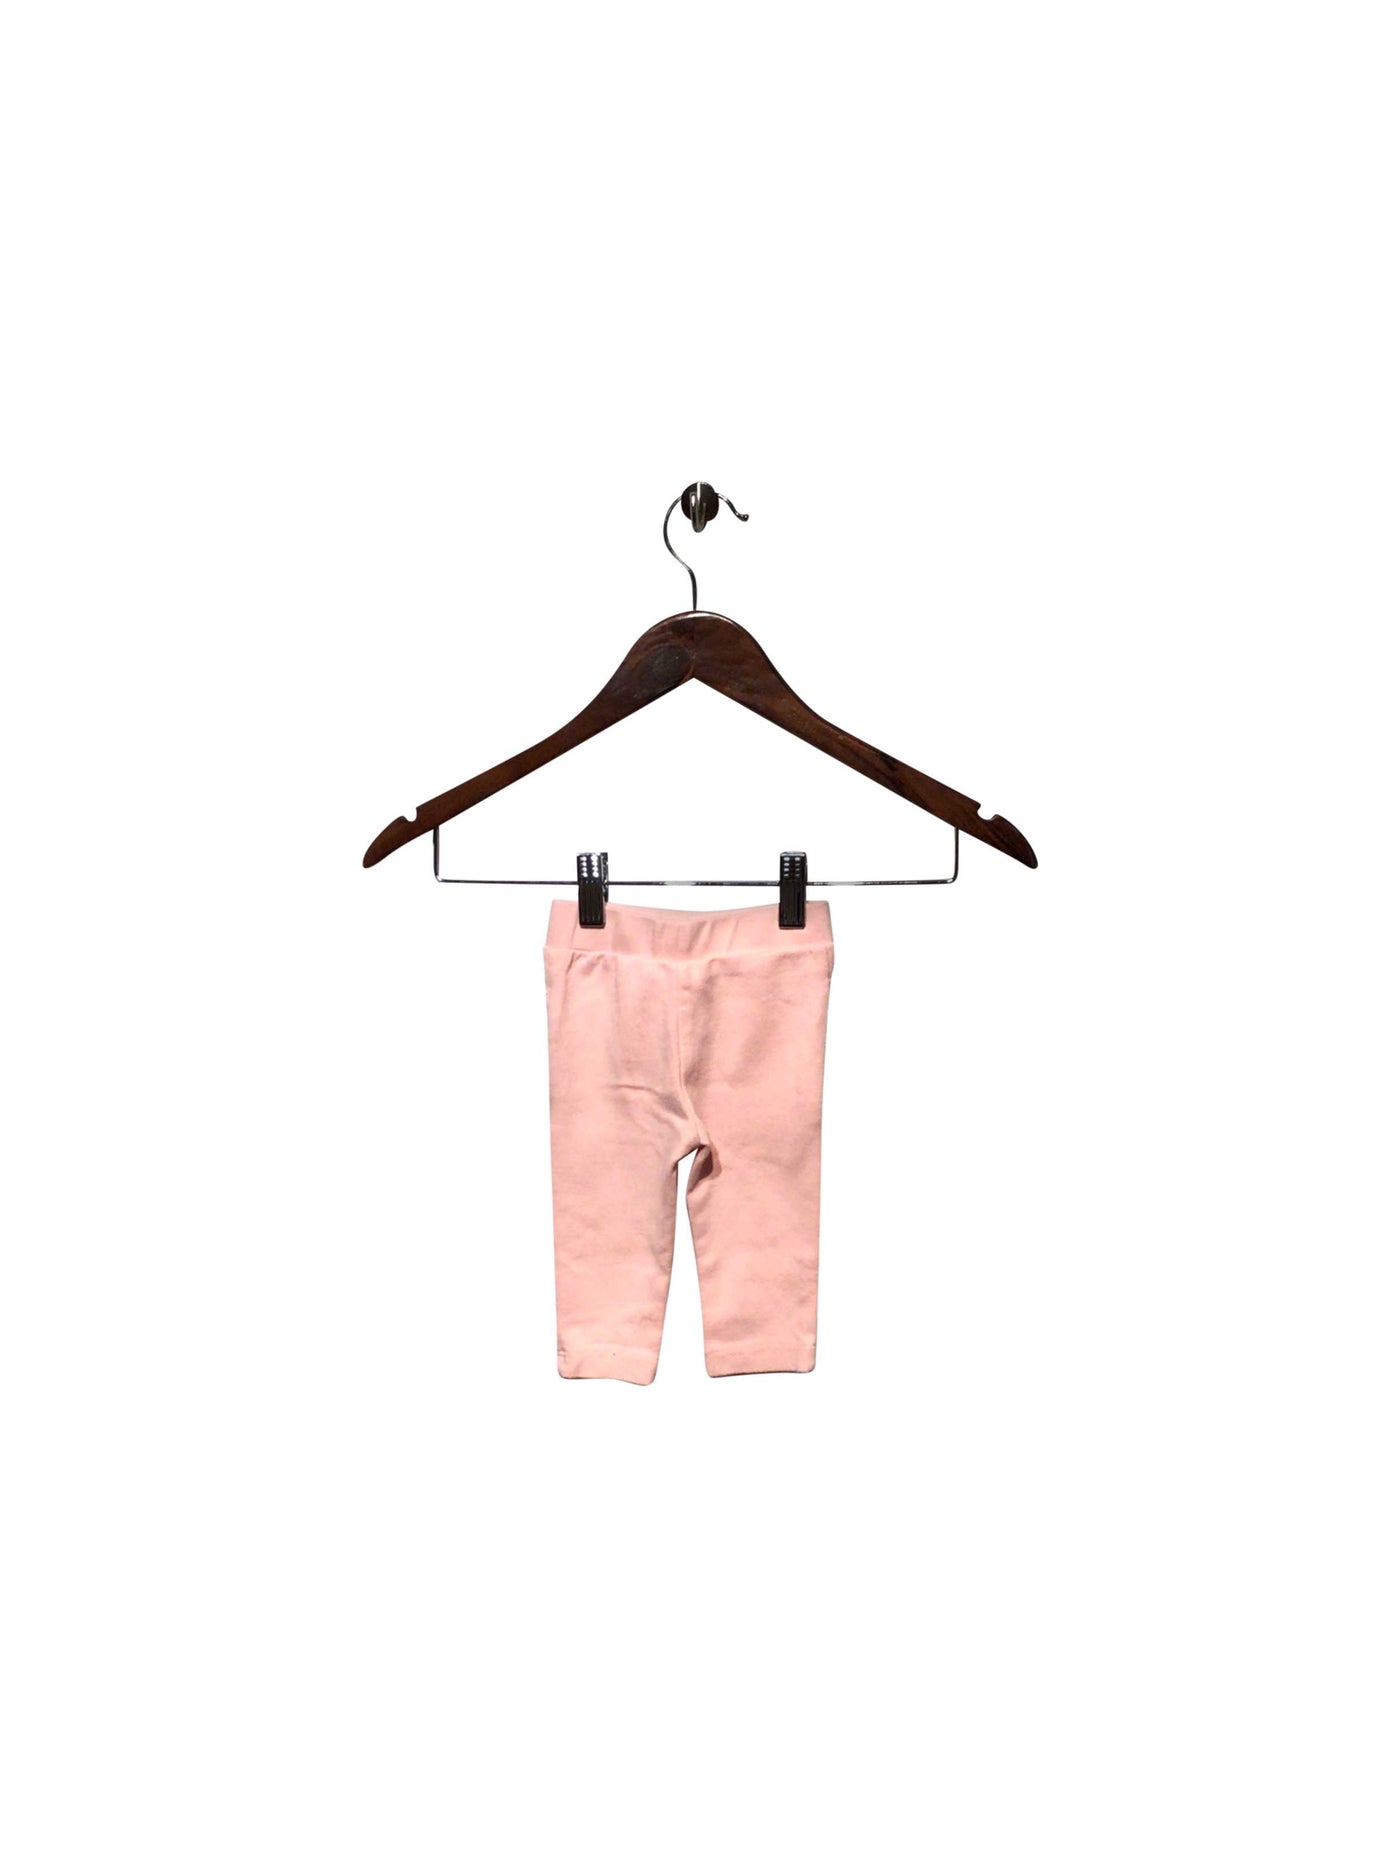 UNBRANDED Regular fit Pant in Pink  -  3-6M  5.99 Koop